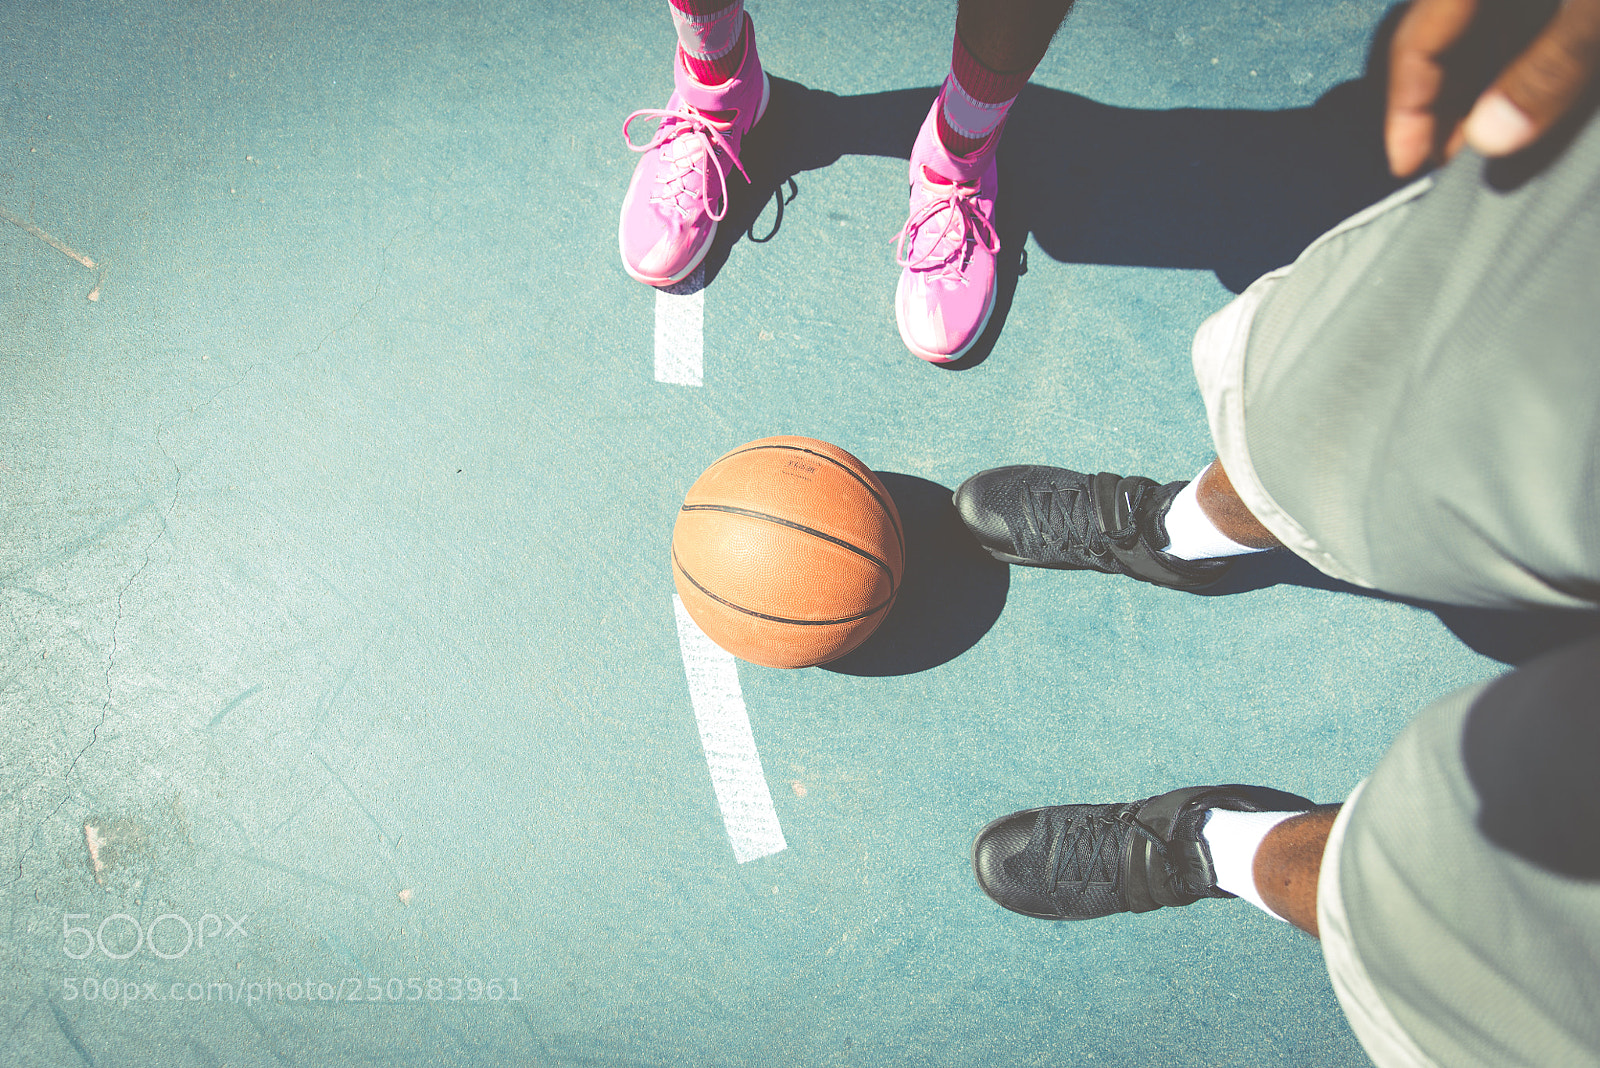 Nikon D610 sample photo. Two basketball players playing photography